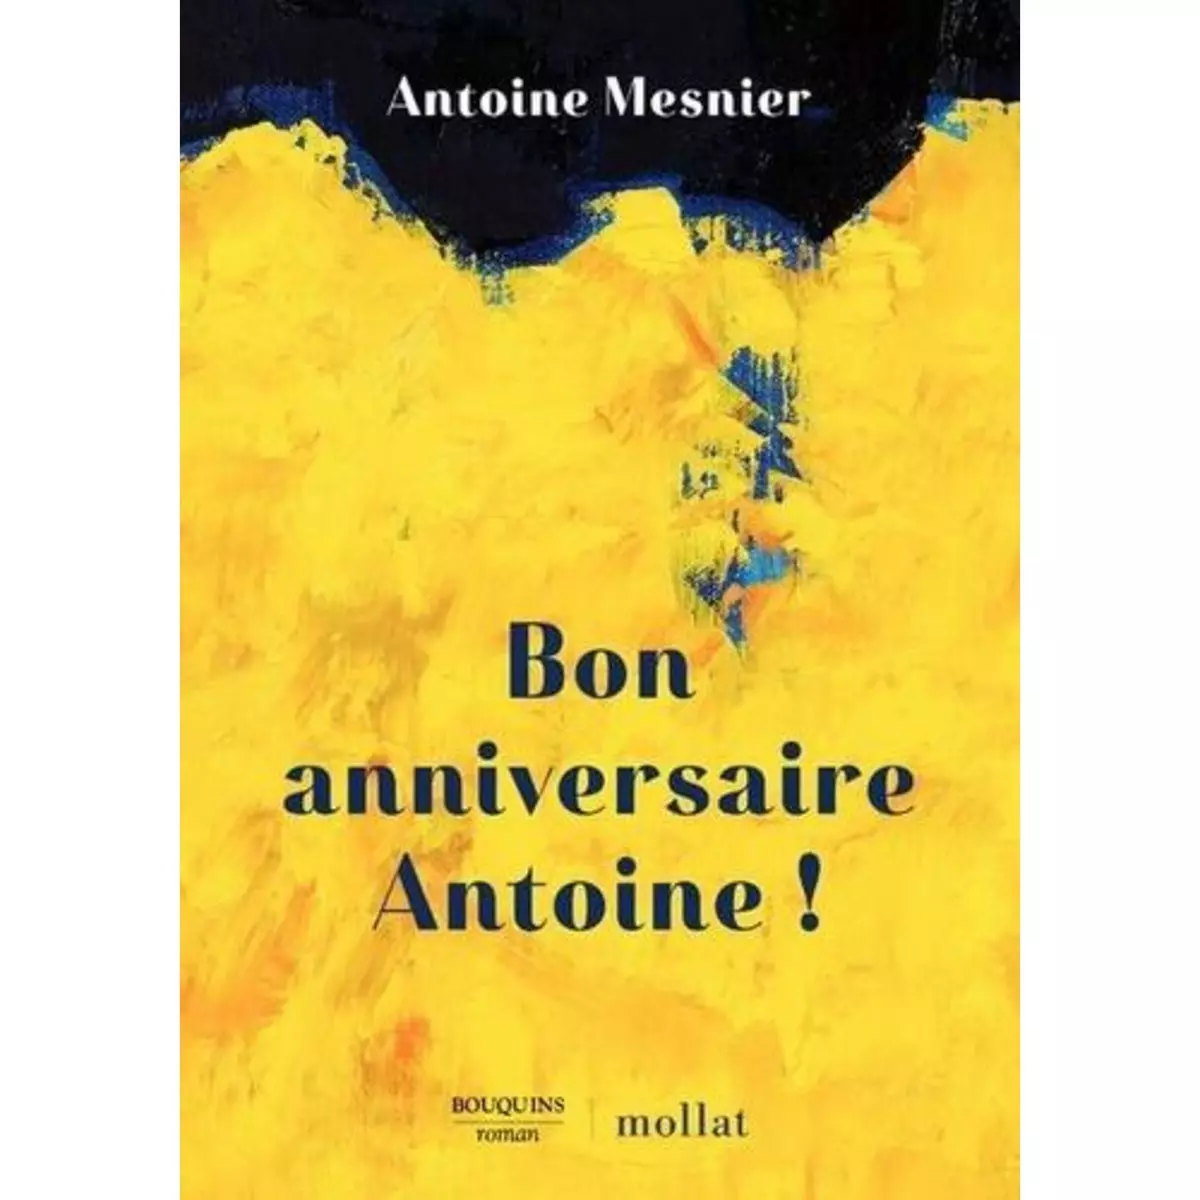  BON ANNIVERSAIRE ANTOINE !, Mesnier Antoine